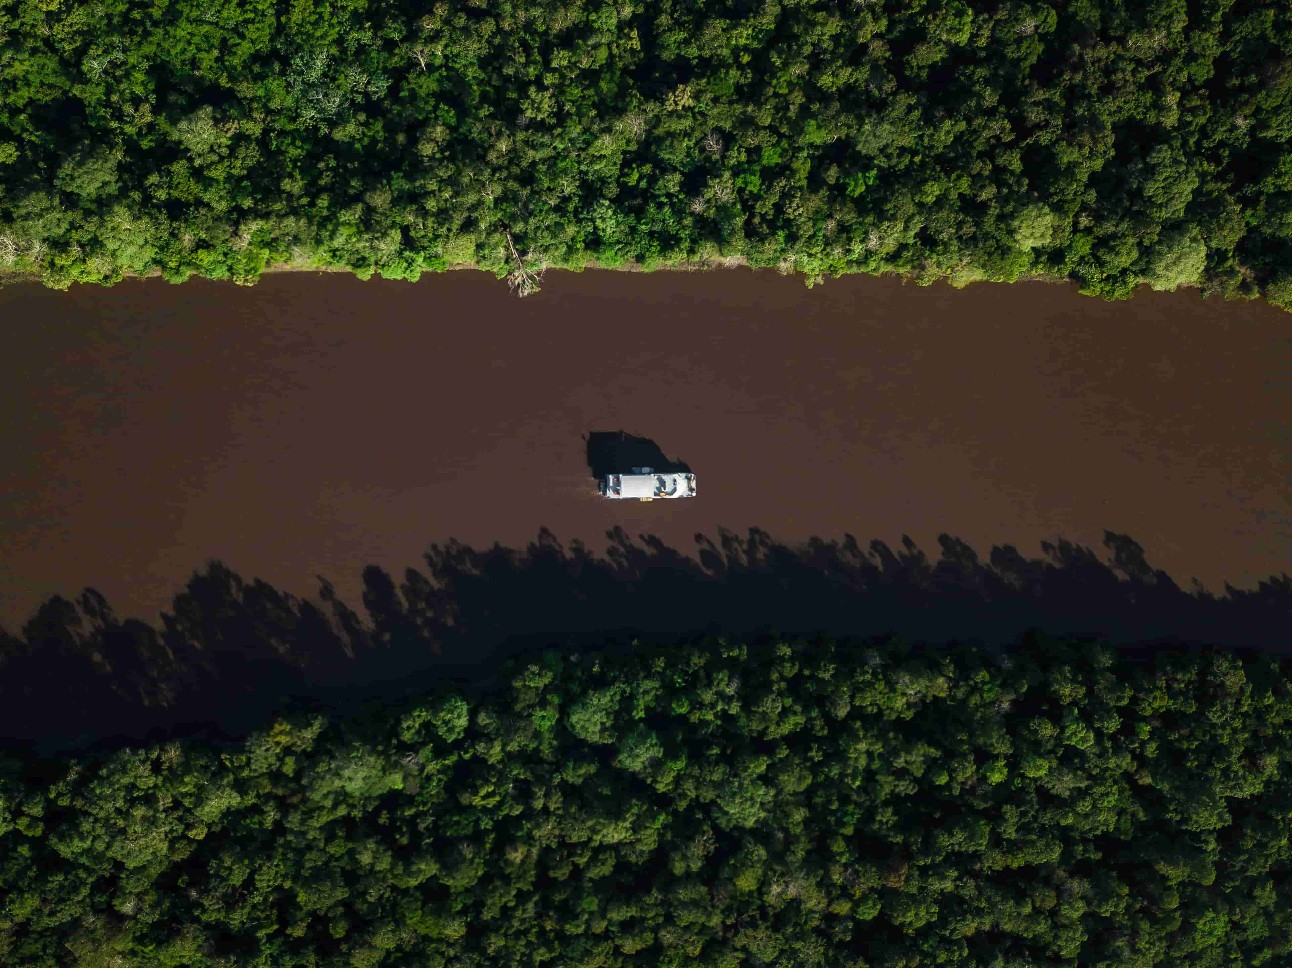 imagem colorida de barco-escola do SENAI navegandoem comunidades ribeirinhas da Amazônia